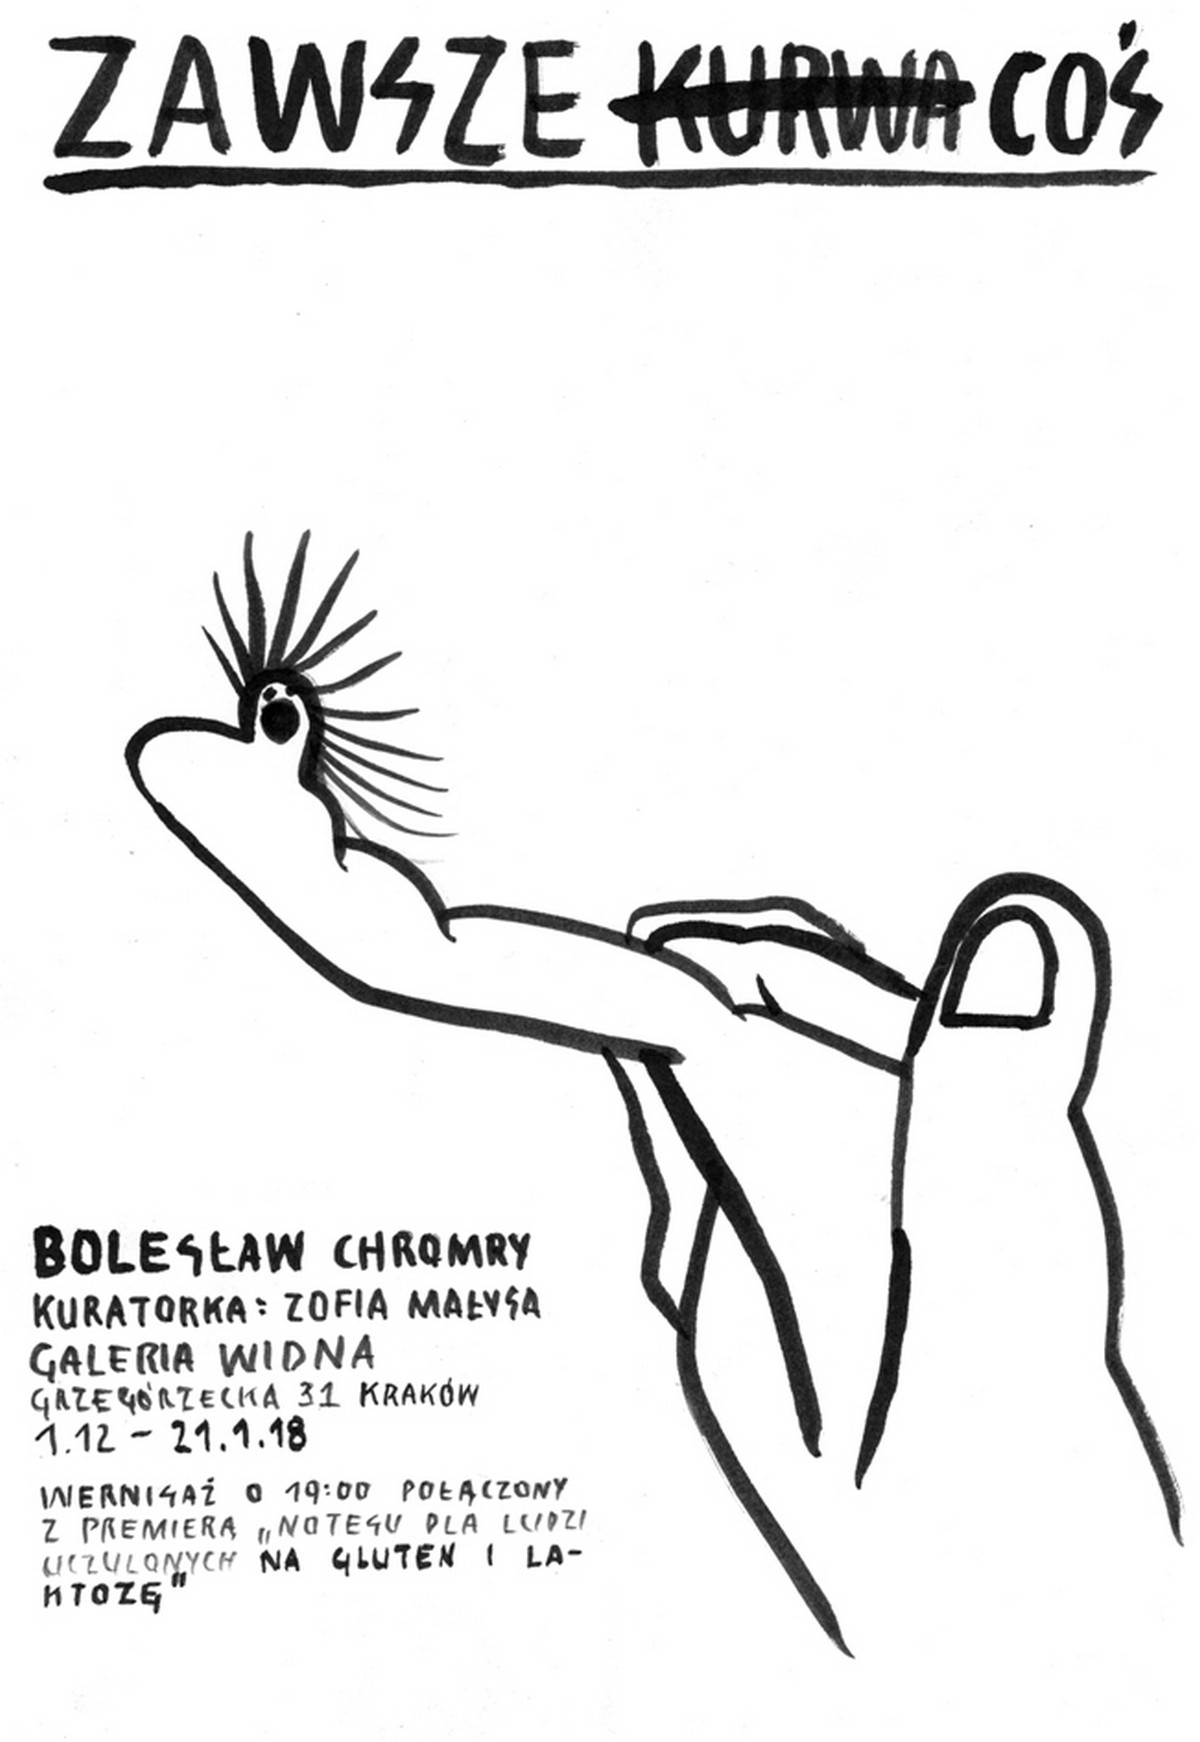 Bolesław Chromry, „Zawsze coś” (źródło: materiały prasowe organizatora)